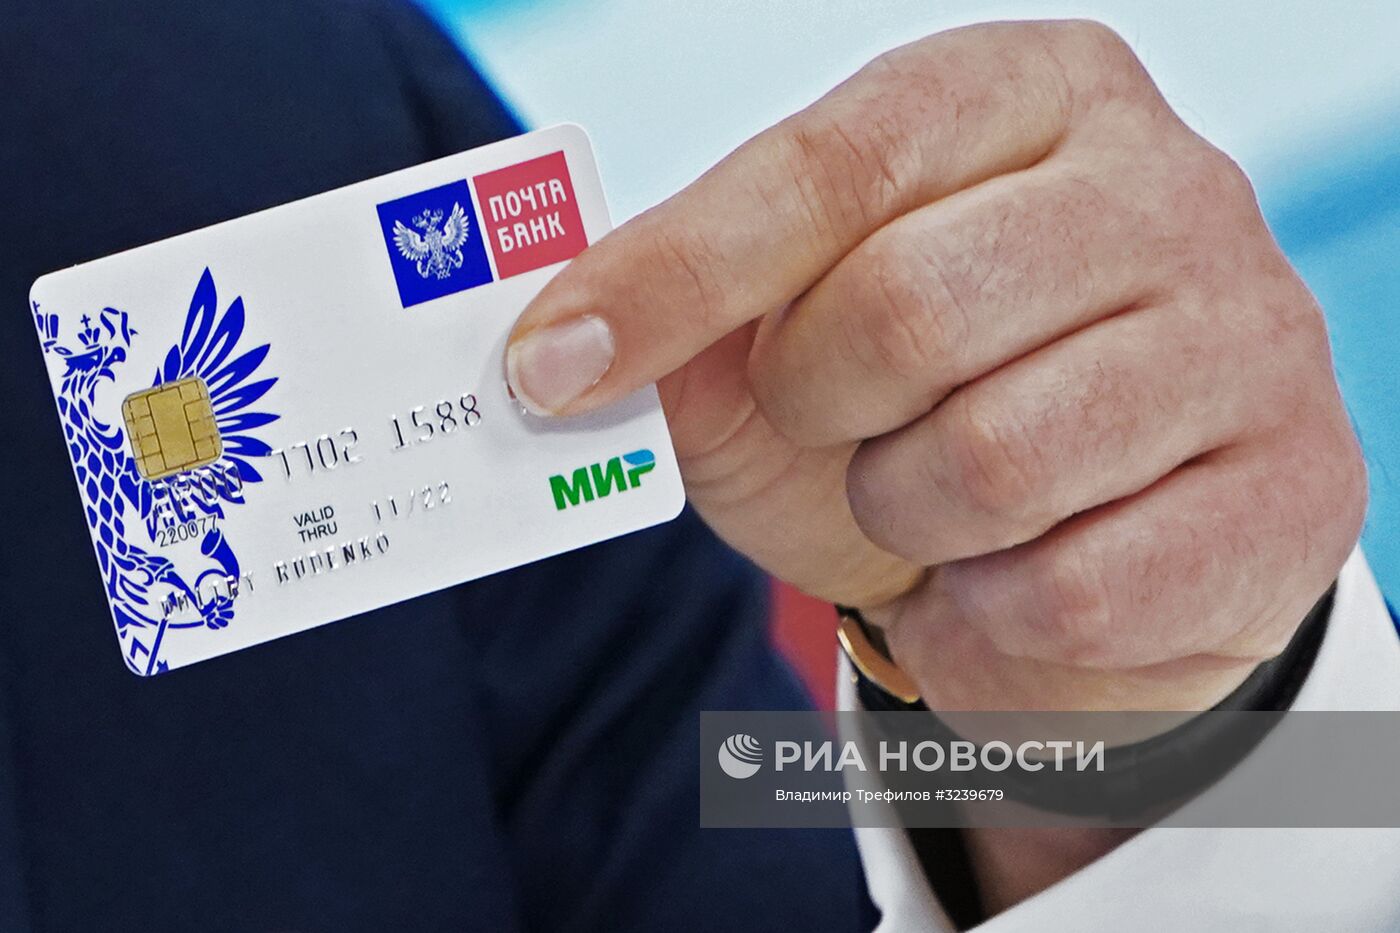 Пресс-конференция, посвященная подписанию соглашения о сотрудничестве между ПАО "Почта Банк" и "Национальной системой платежных карт"